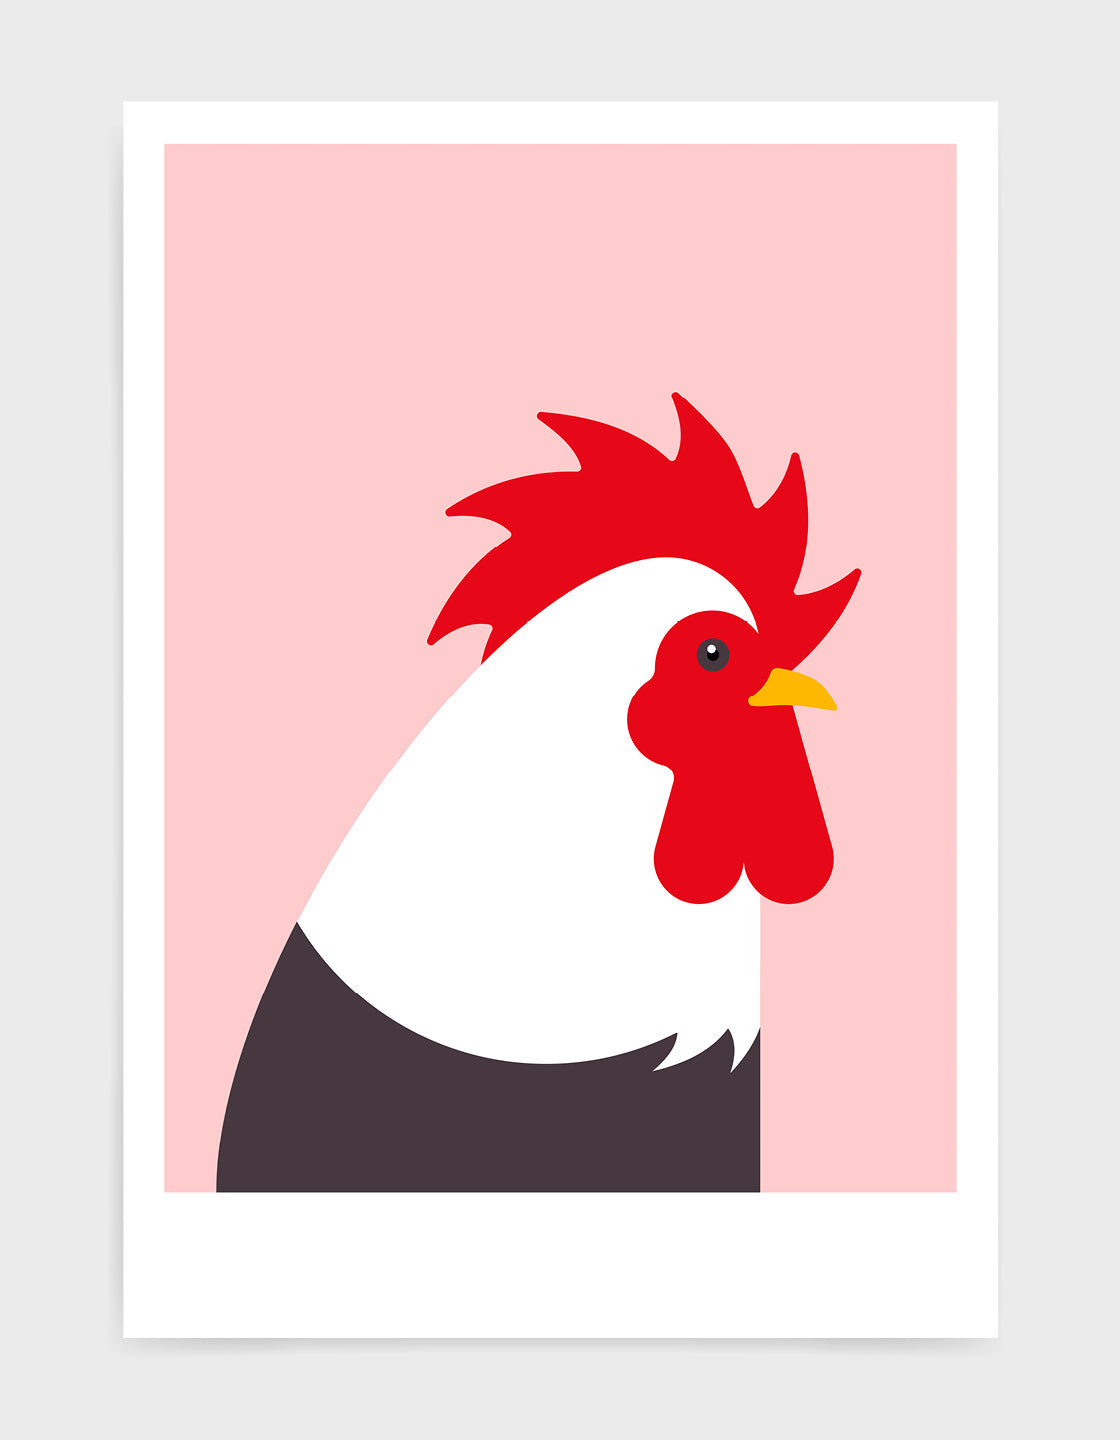 Modern cockerel / chicken illustration against a pink background